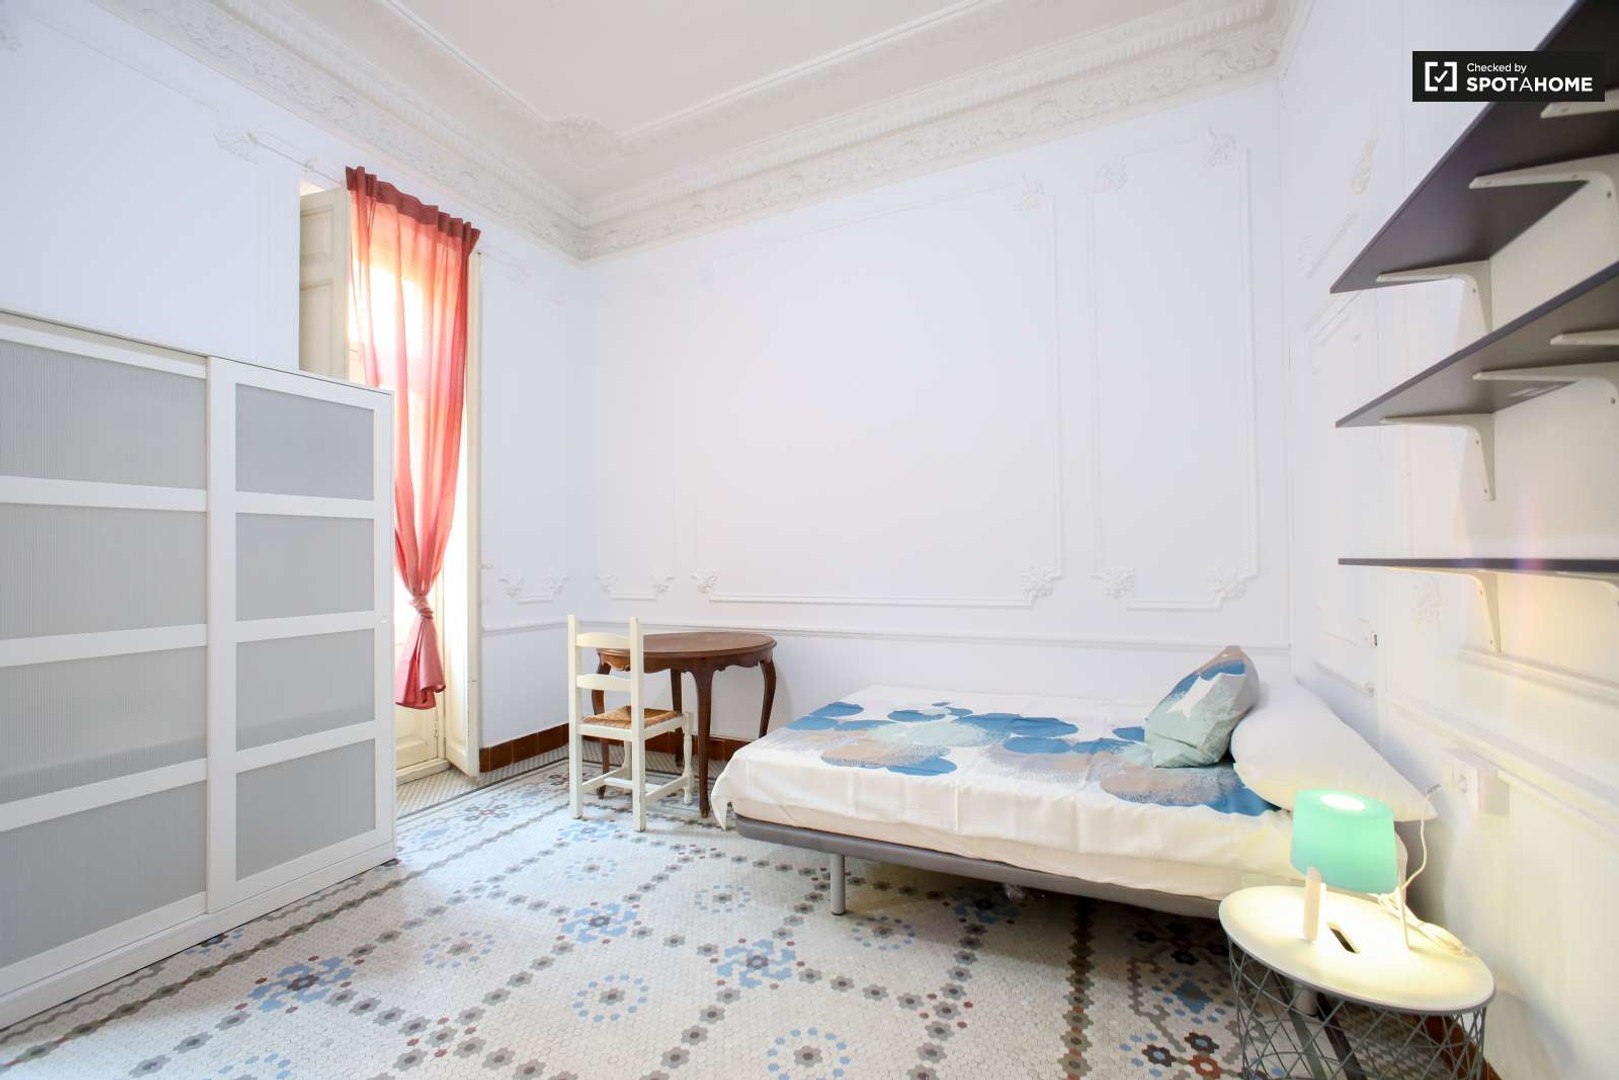 Cheap private room in valencia